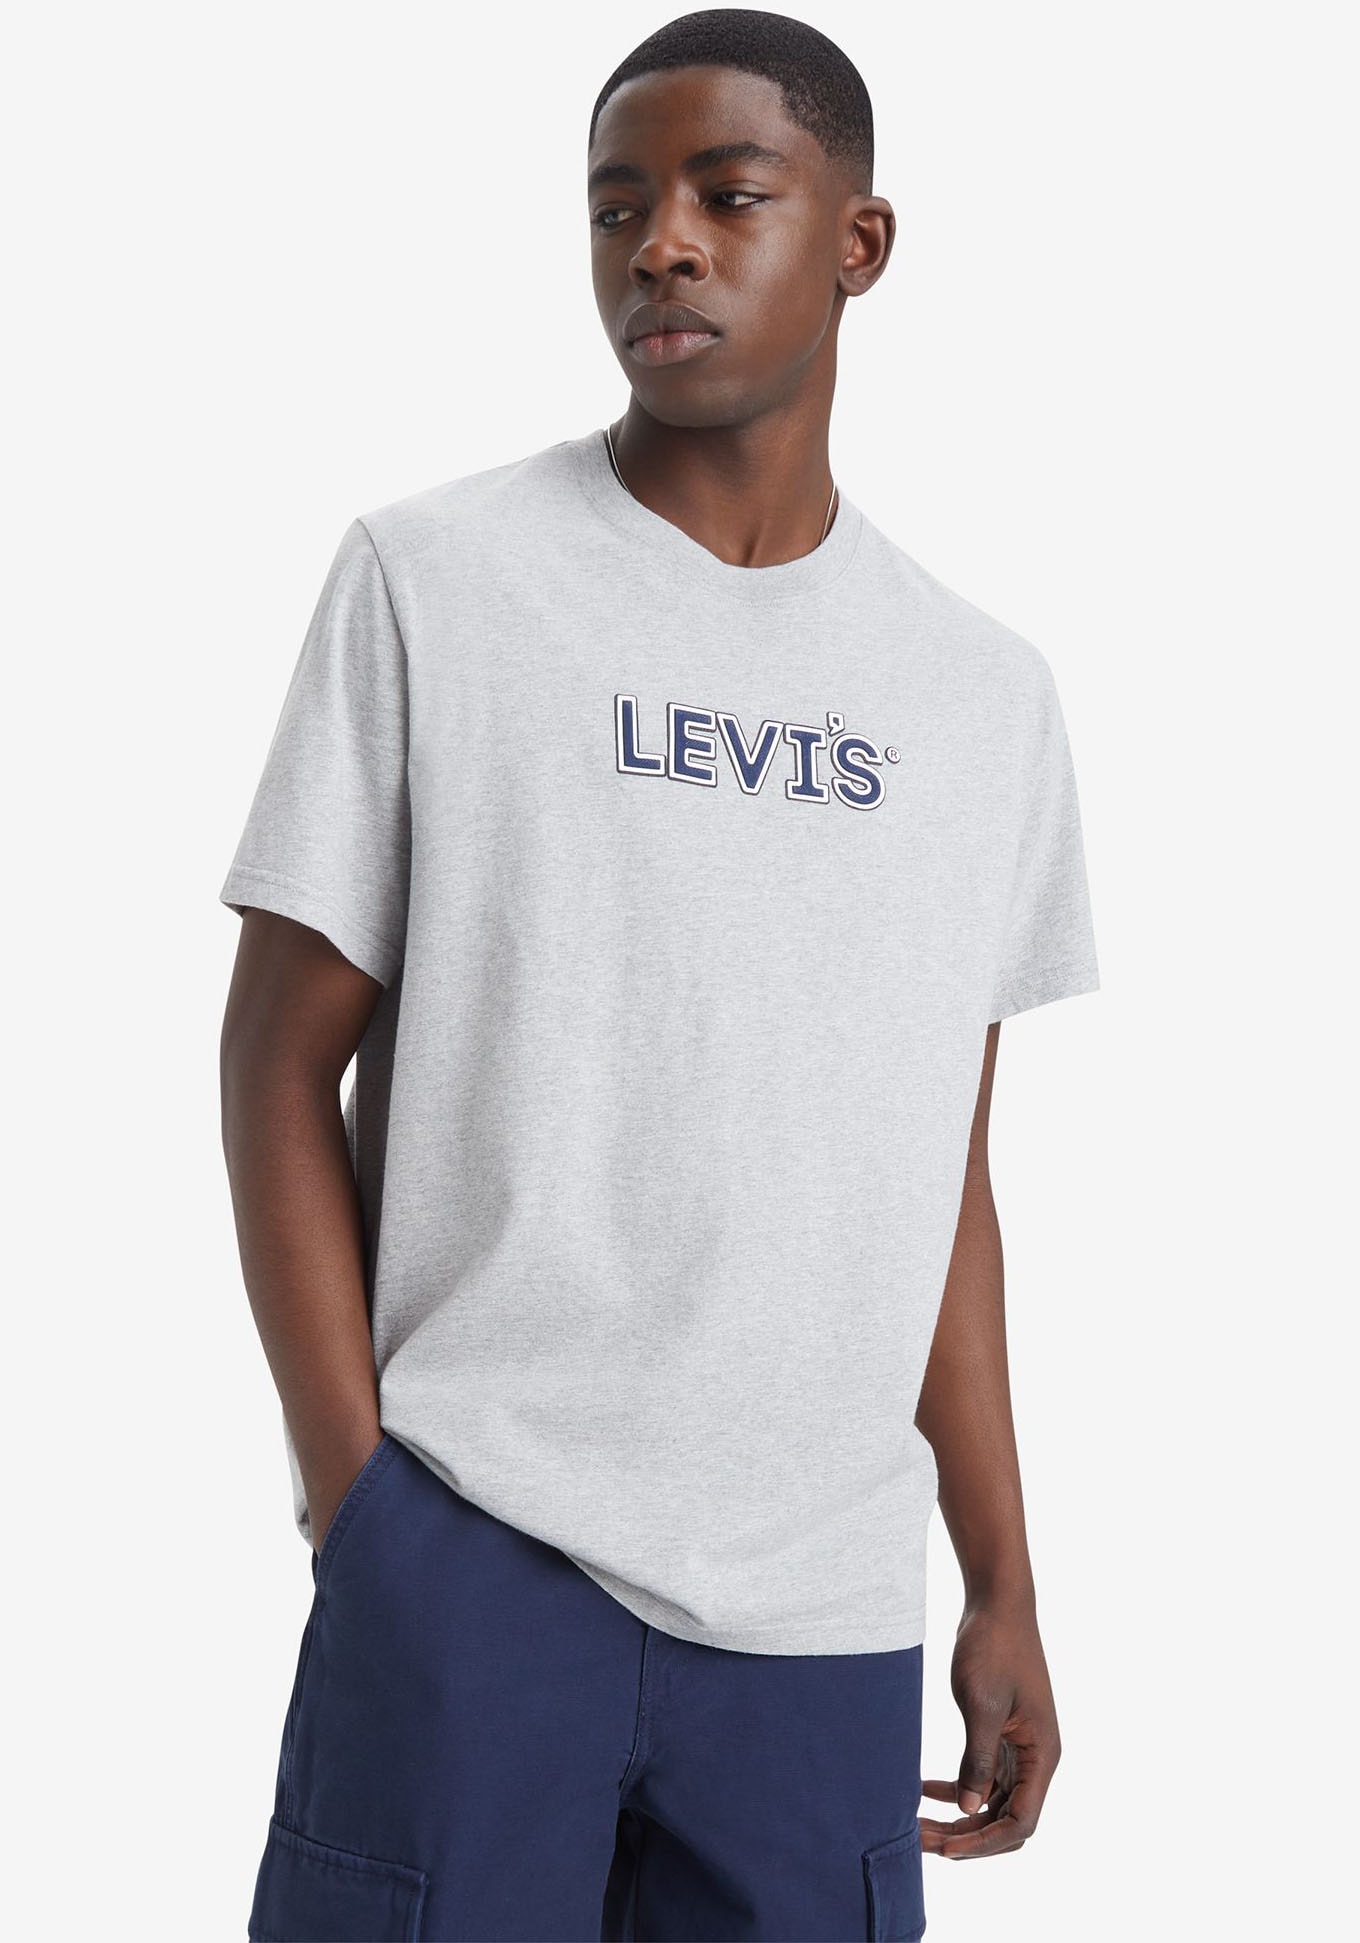 Levis Print-Shirt "RELAXED FIT TEE", mit Levis-Schriftzug